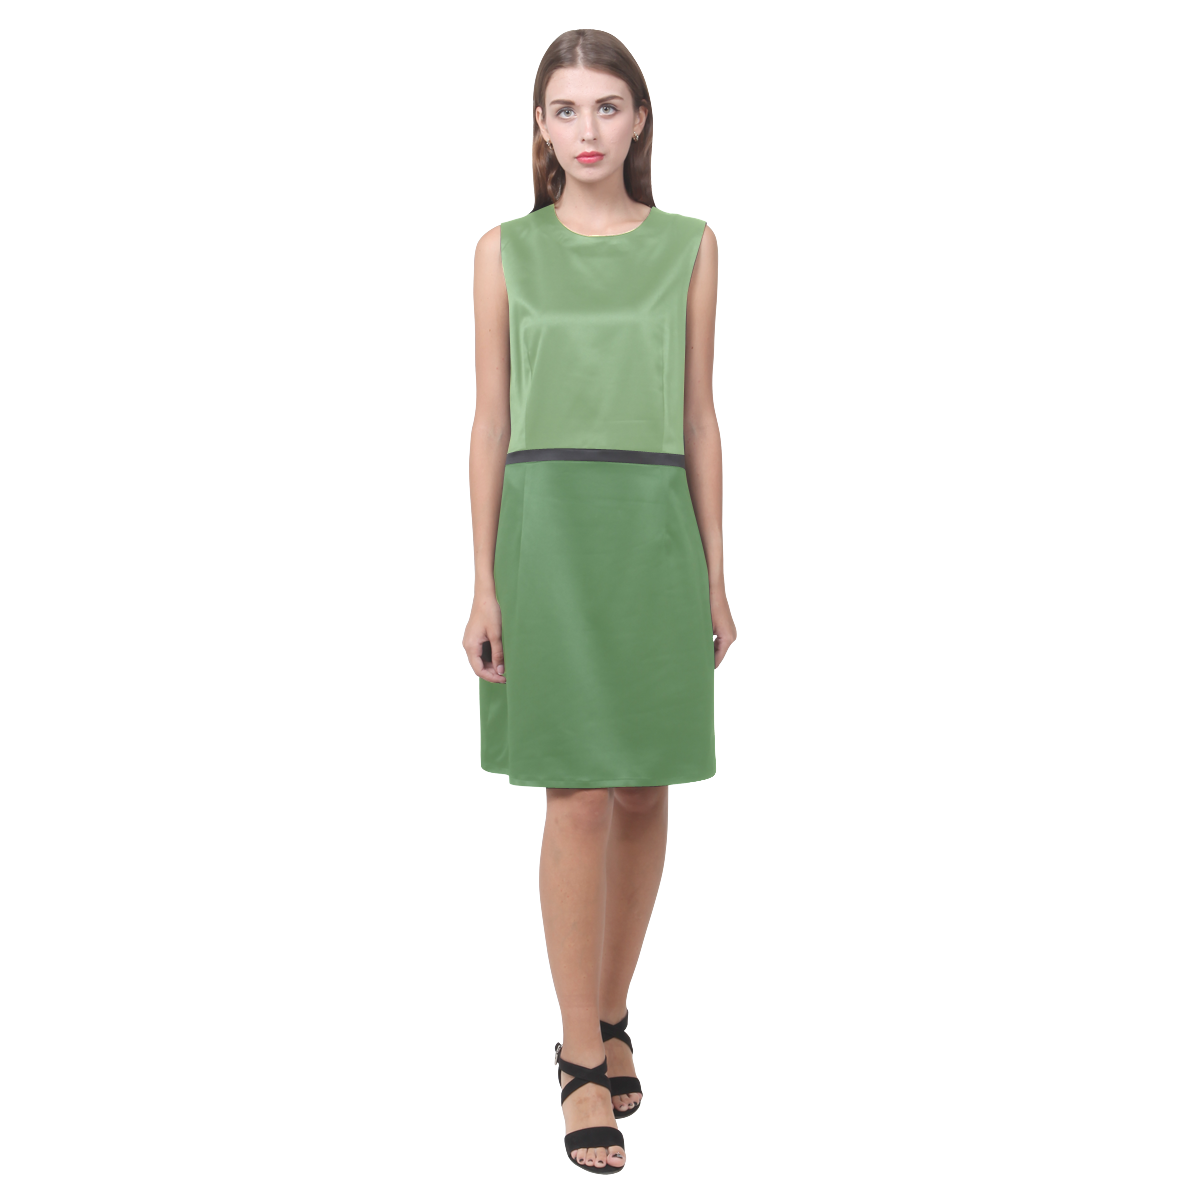 Green Tea and Hippie Green Eos Women's Sleeveless Dress (Model D01)